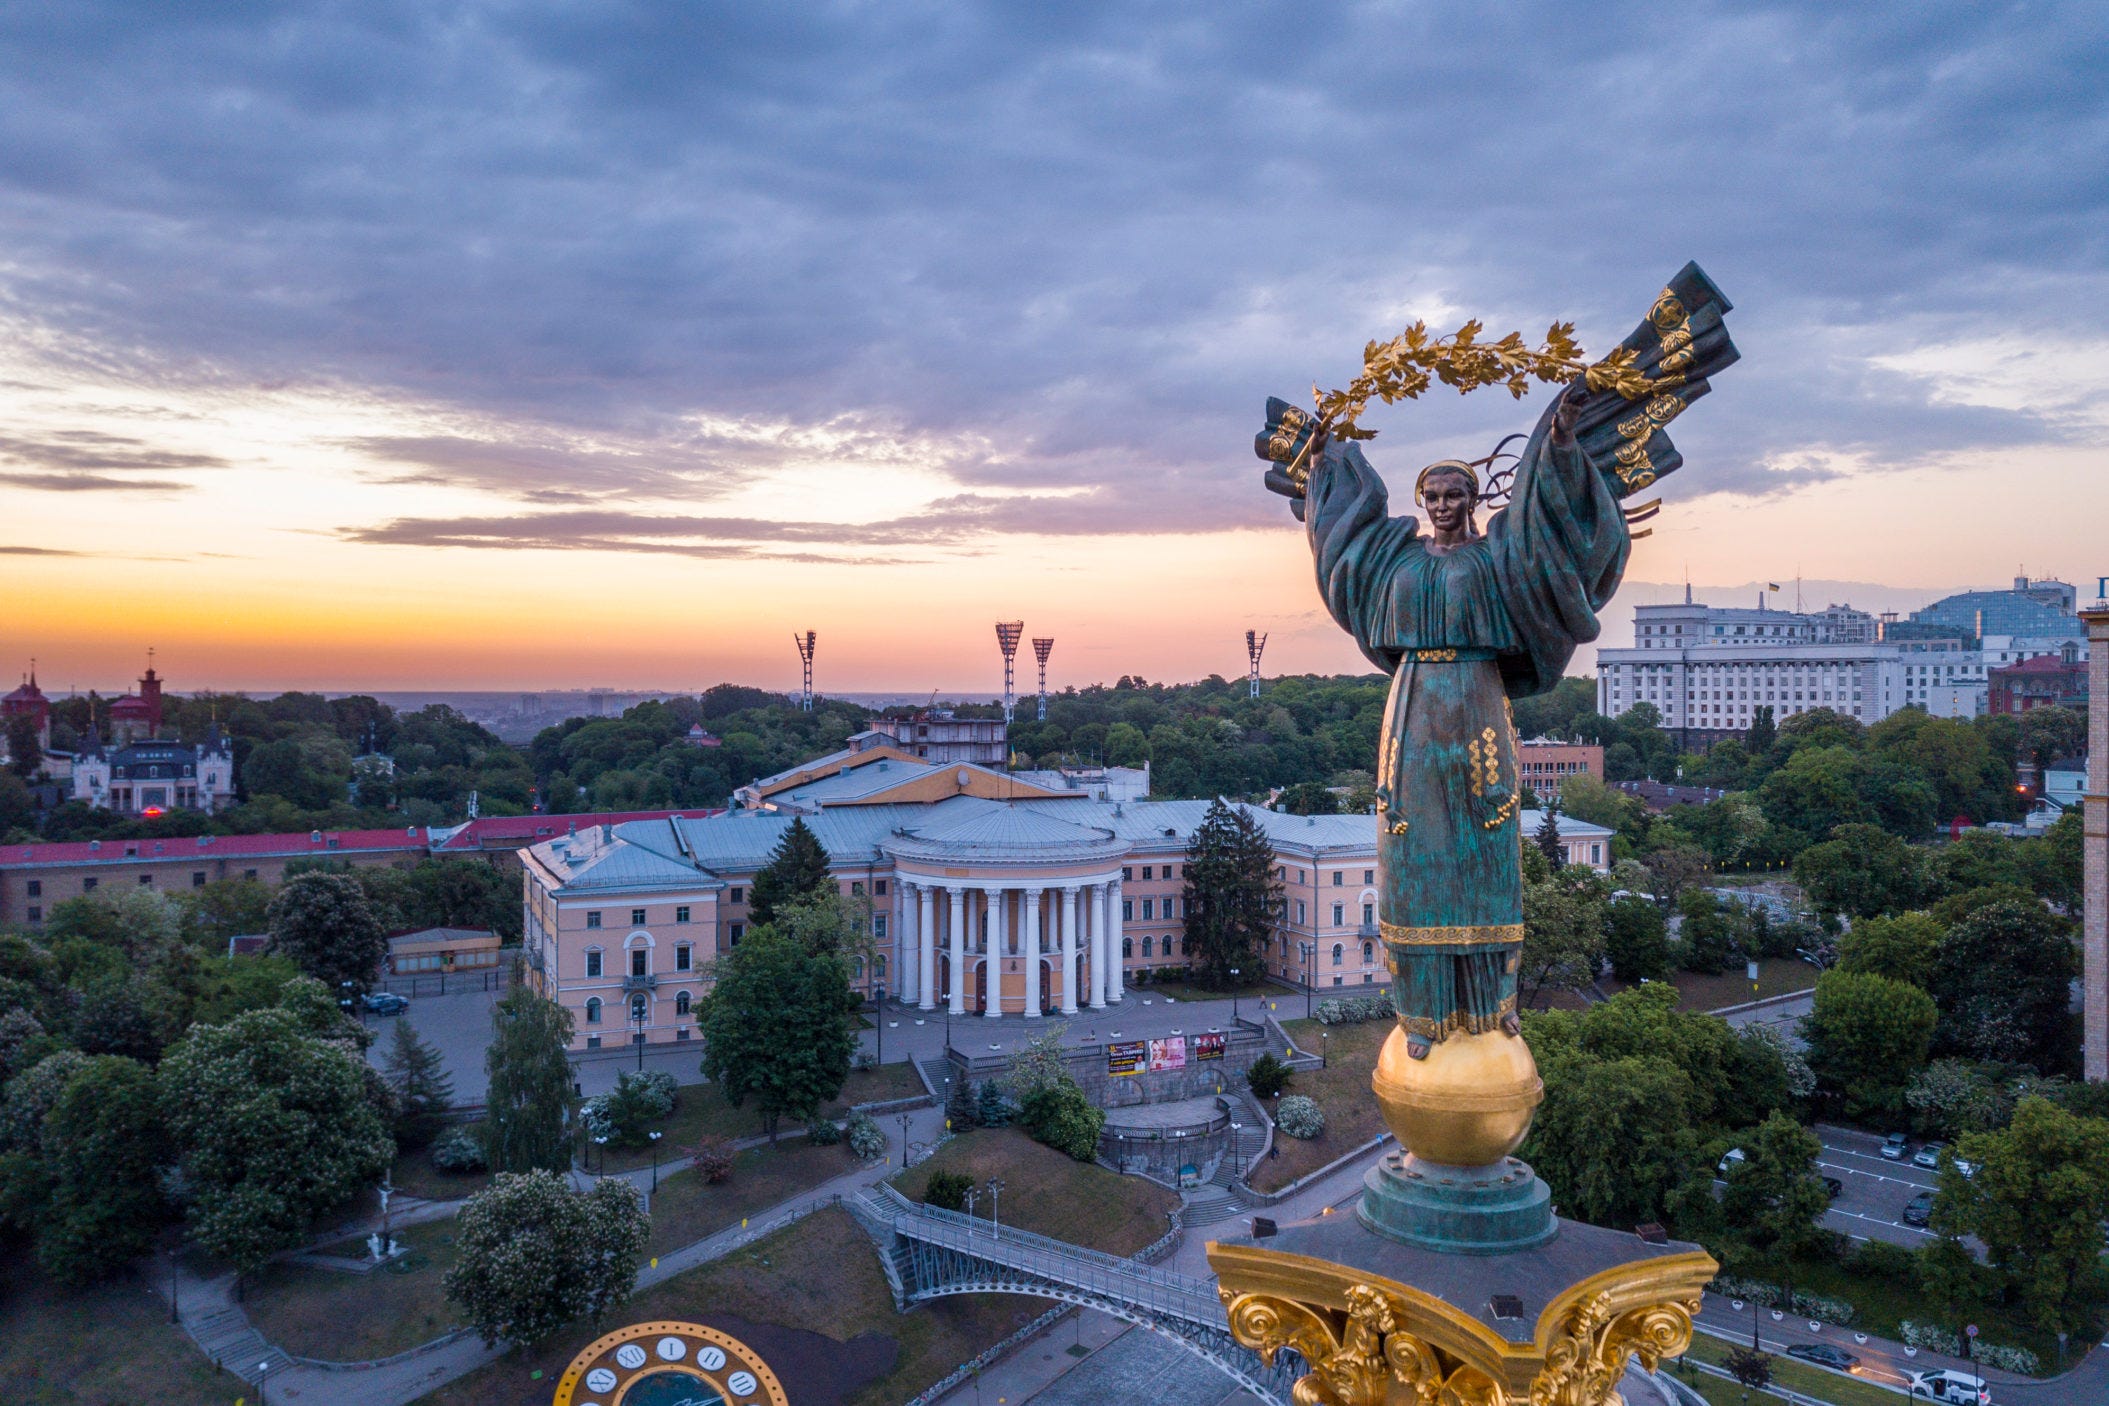 隠れたit大国 ウクライナの実像に迫る 前編 ウクライナの概要 By Hiroshi Shibata Medium